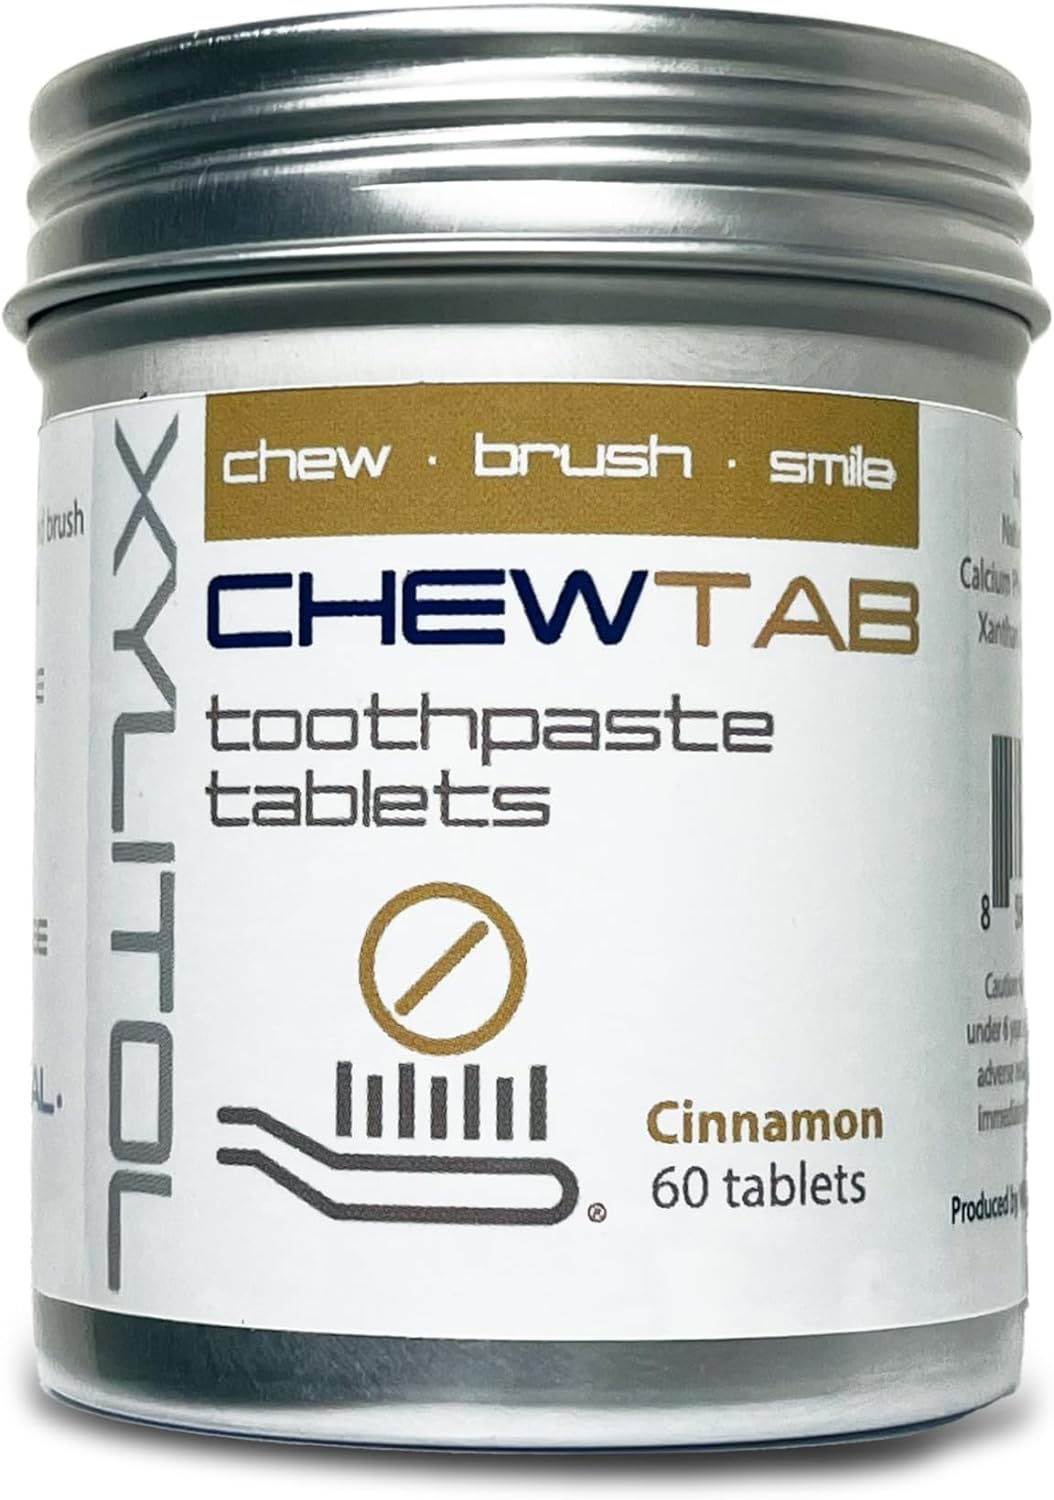 Chewtab Toothpaste Tablets Cinnamon